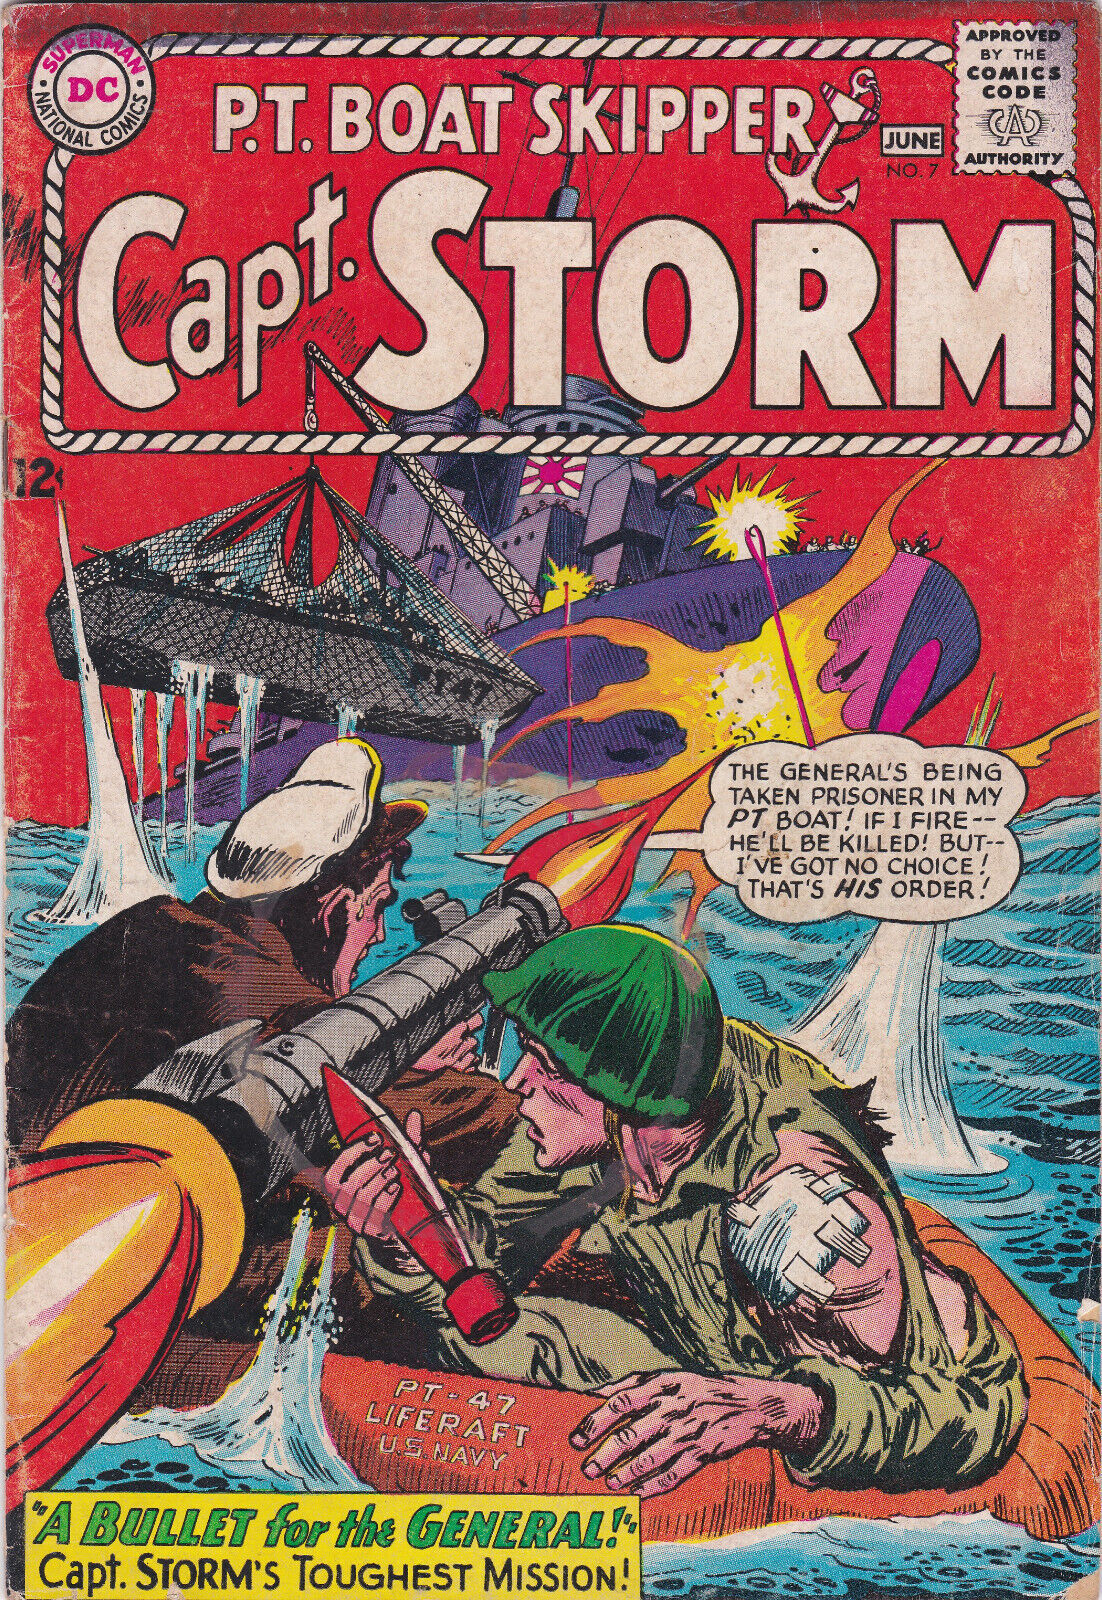 DC Comics - P.T. Boat Skipper Capt. Storm #7 Aug. 1965 VG+